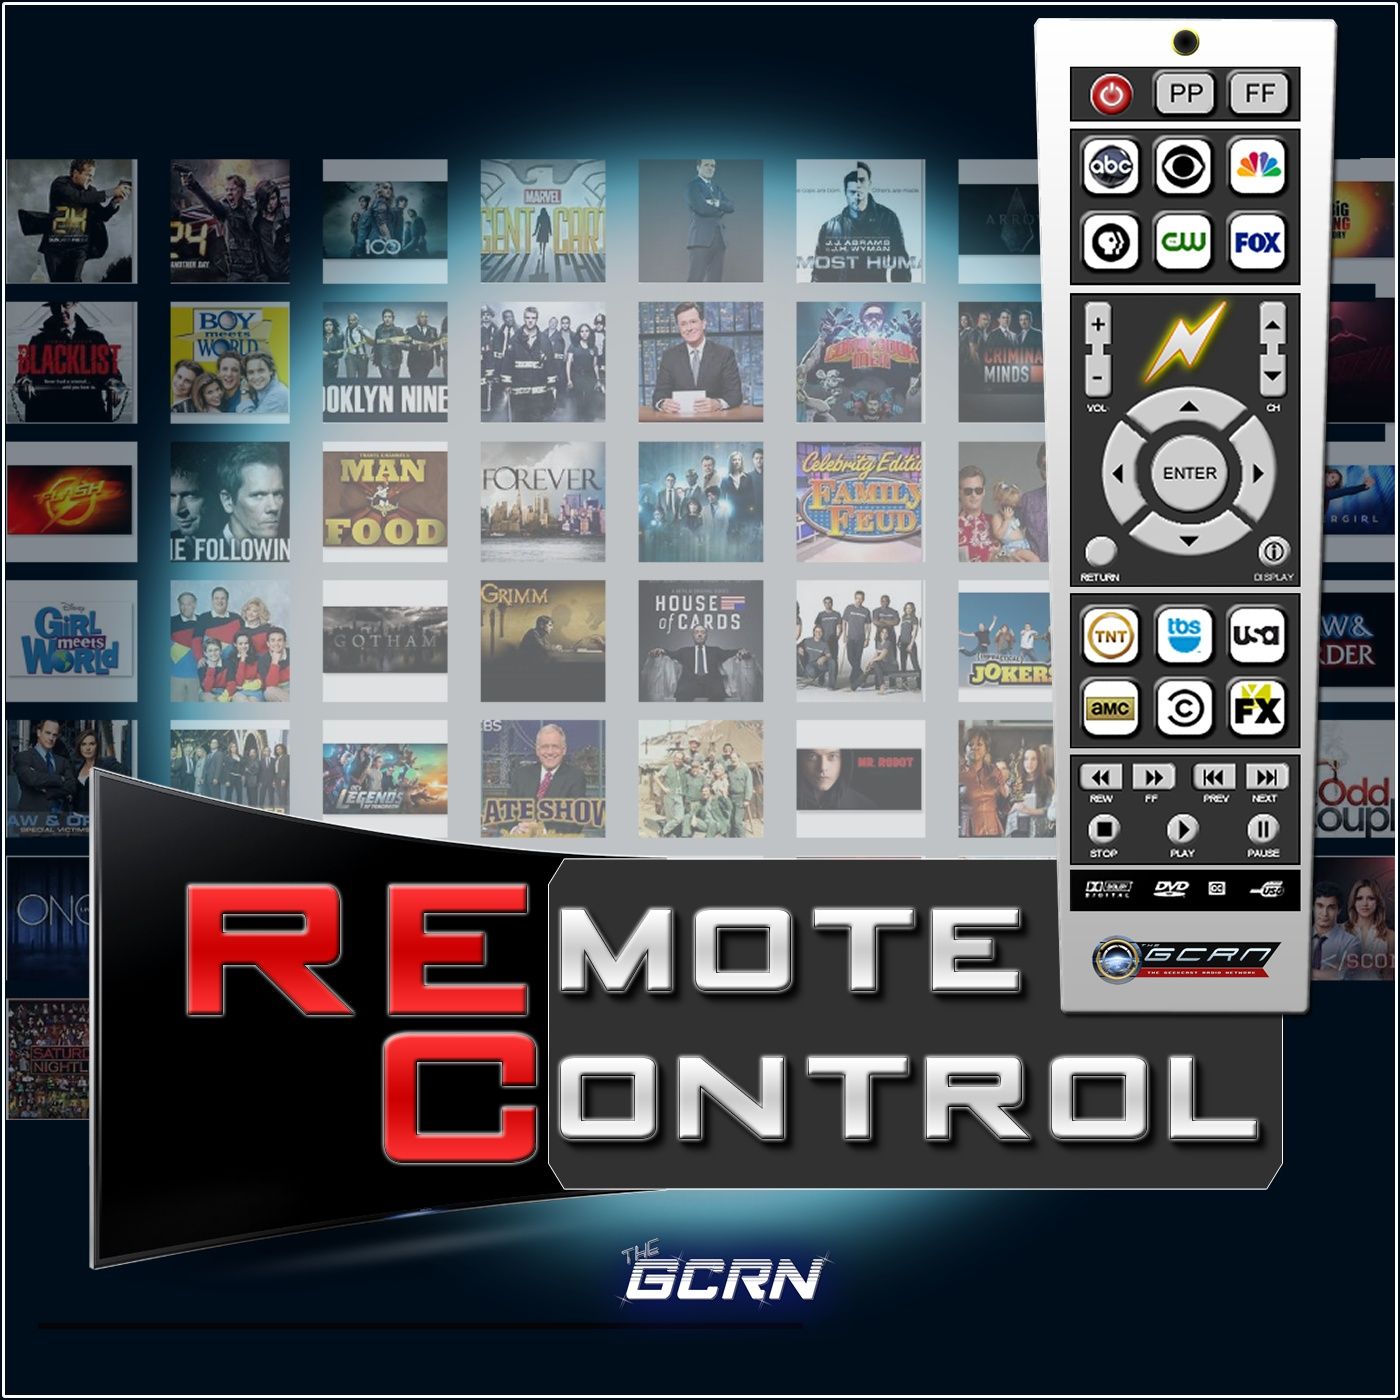 Remote Control – Pilot Premiere – Marvel’s Agent Carter